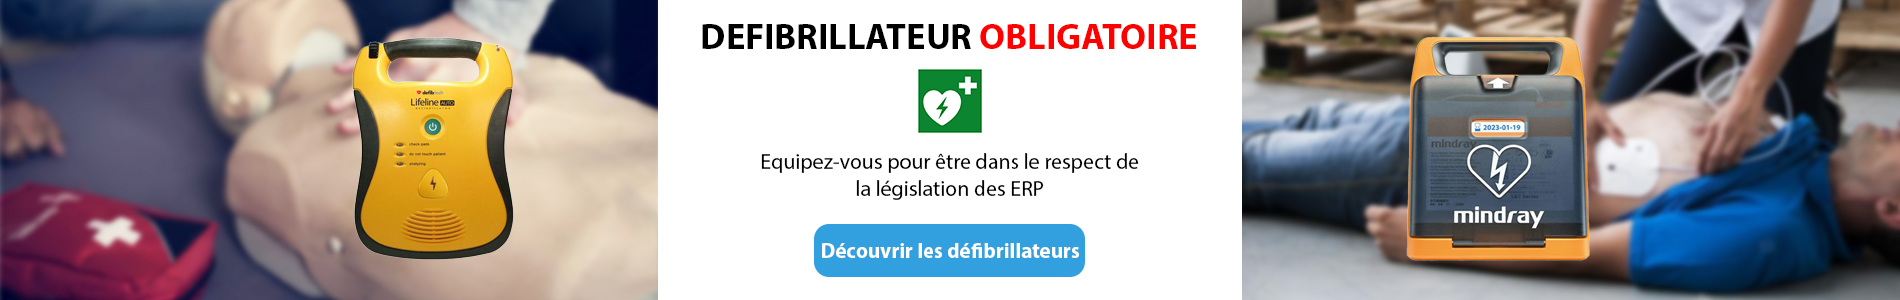 Les défibrillateurs obligatoires pour les ERP